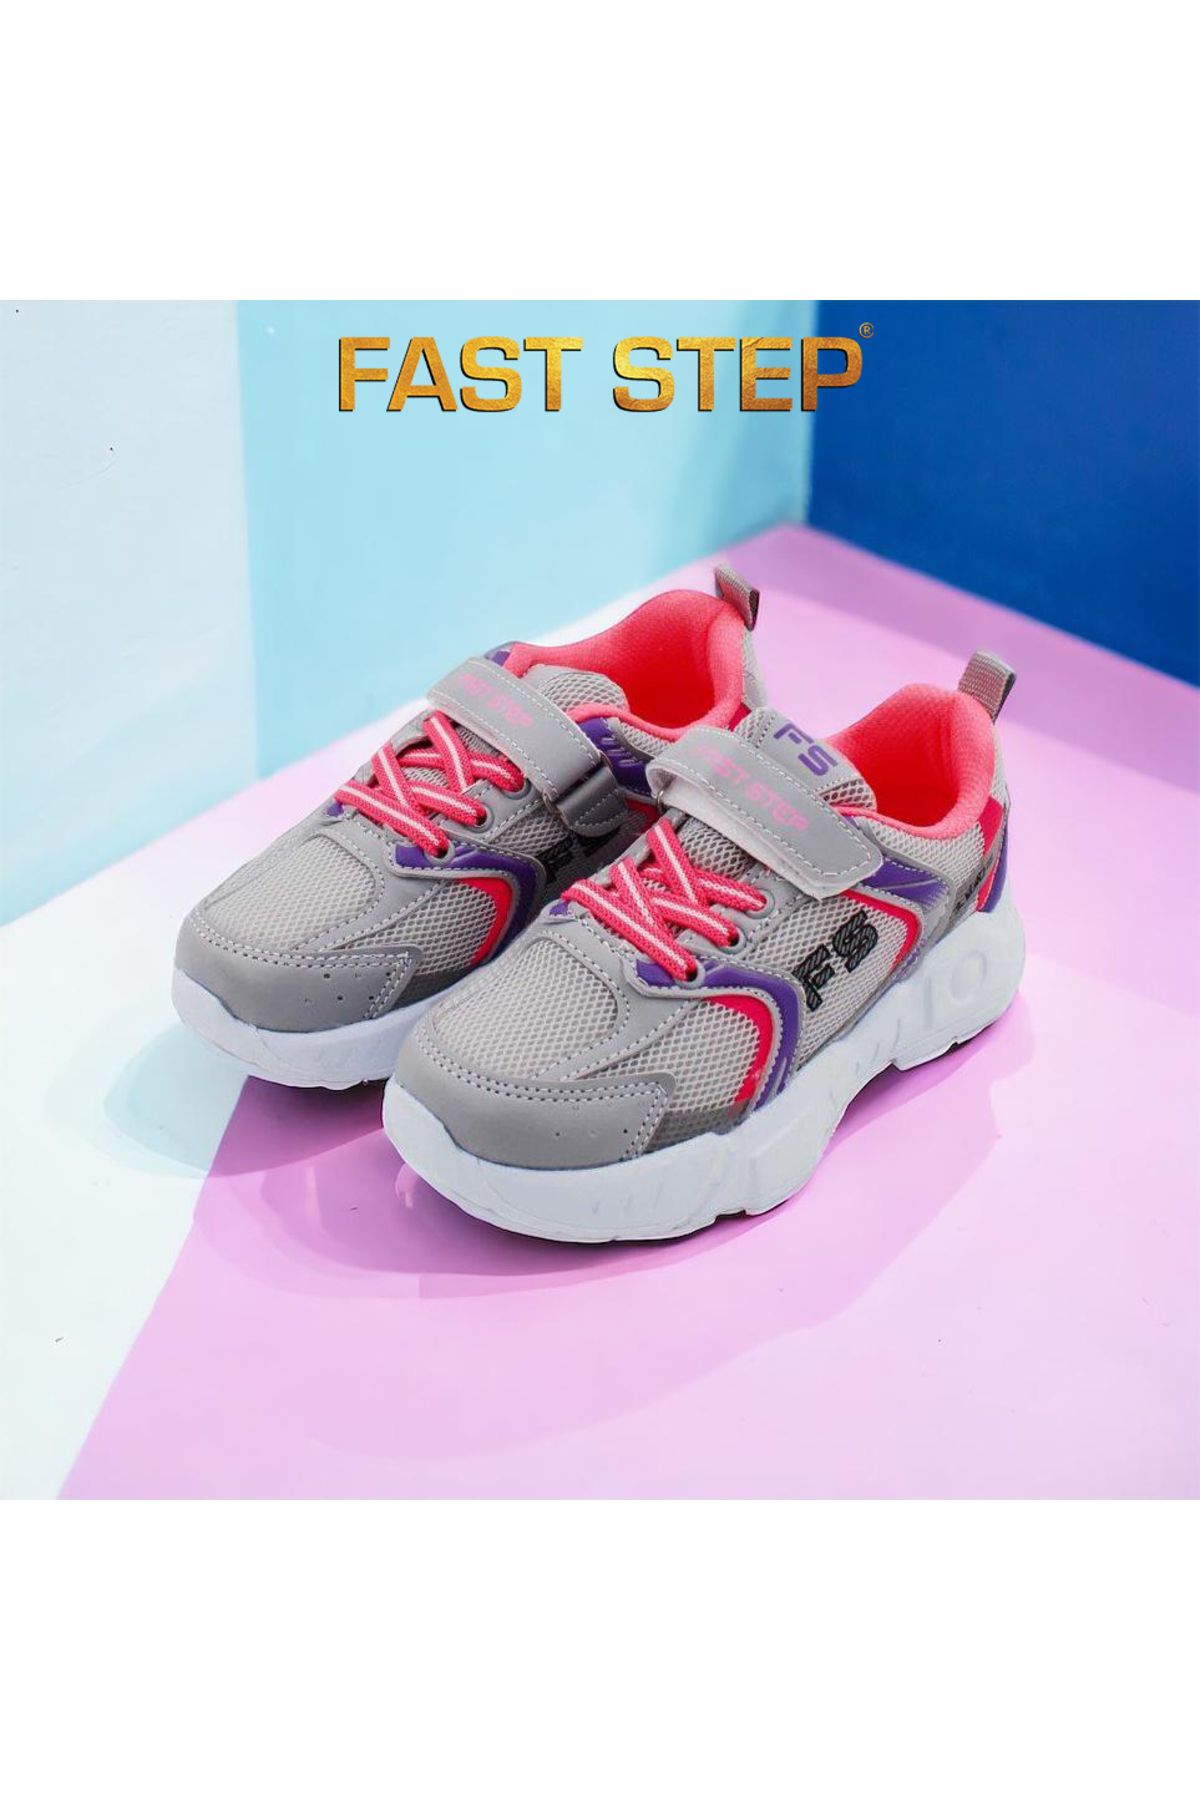 Fast Step Unisex Spor Rahat Taban Hafif Sneaker Cırt Cırtlı Yazlık Çocuk Ayakkabı 868xcaf2110